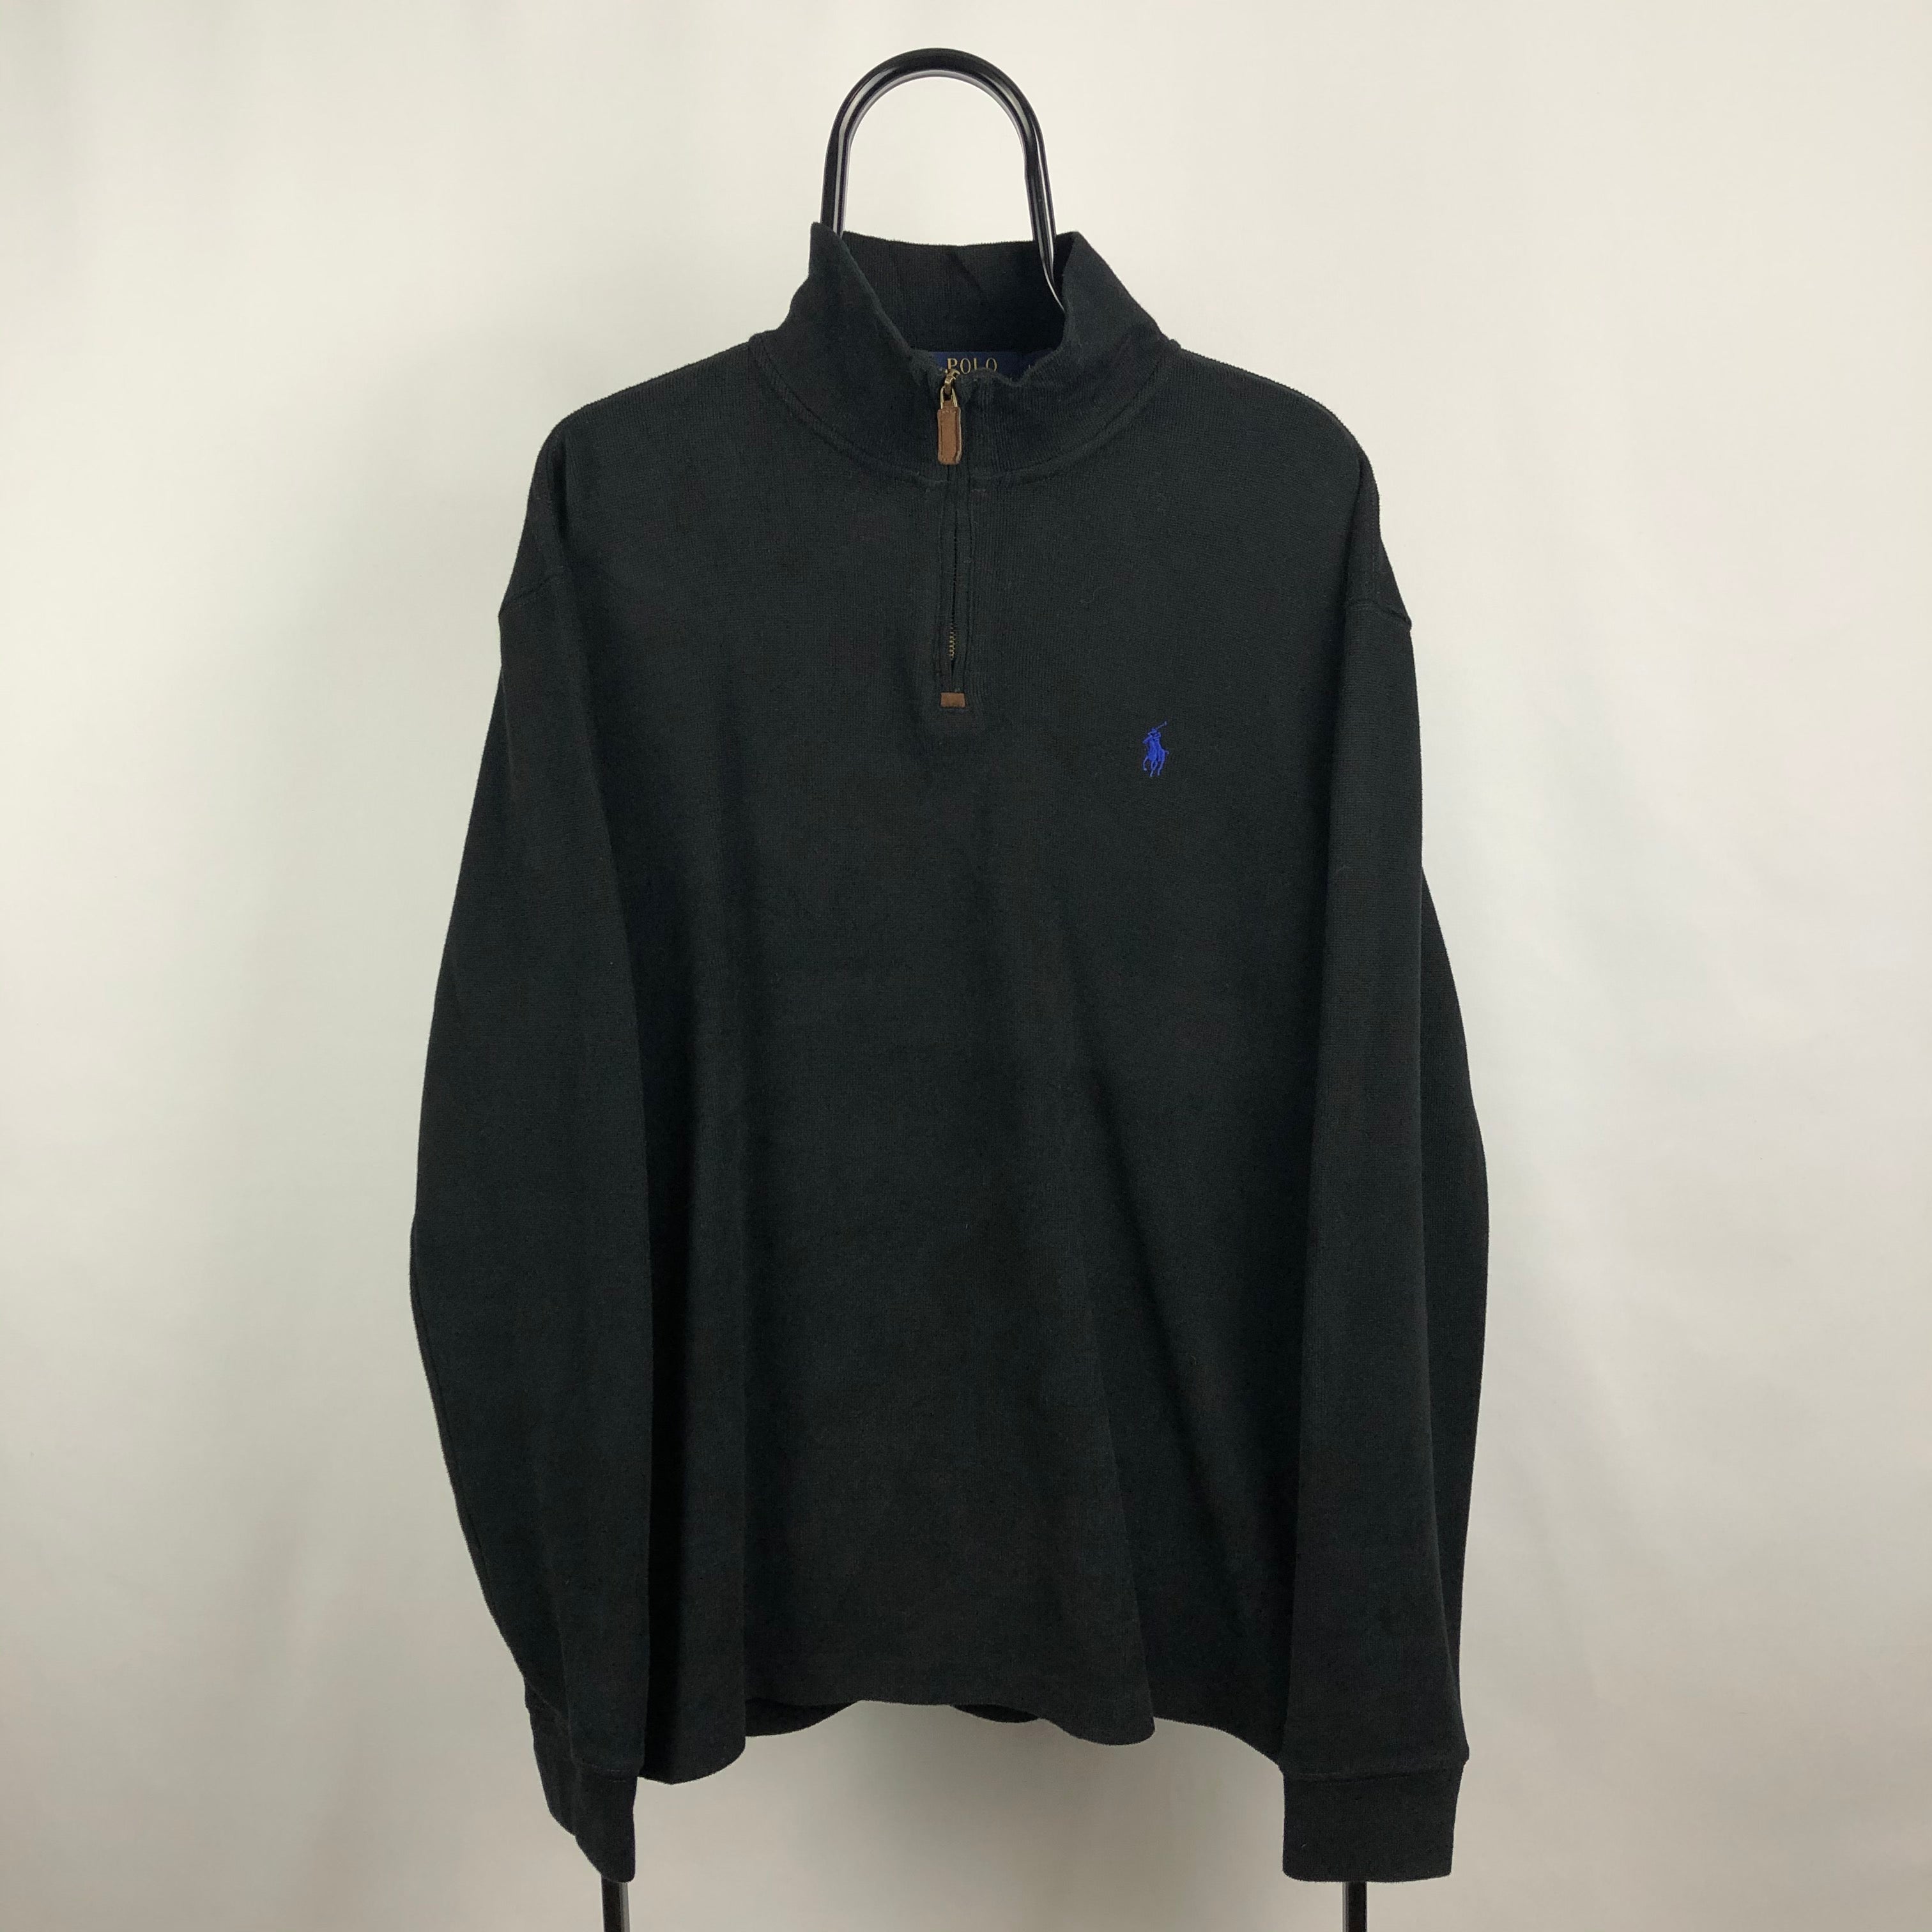 Polo Ralph Lauren 1/4 Zip Sweatshirt in Black - Men's XL/Women's XXL ...